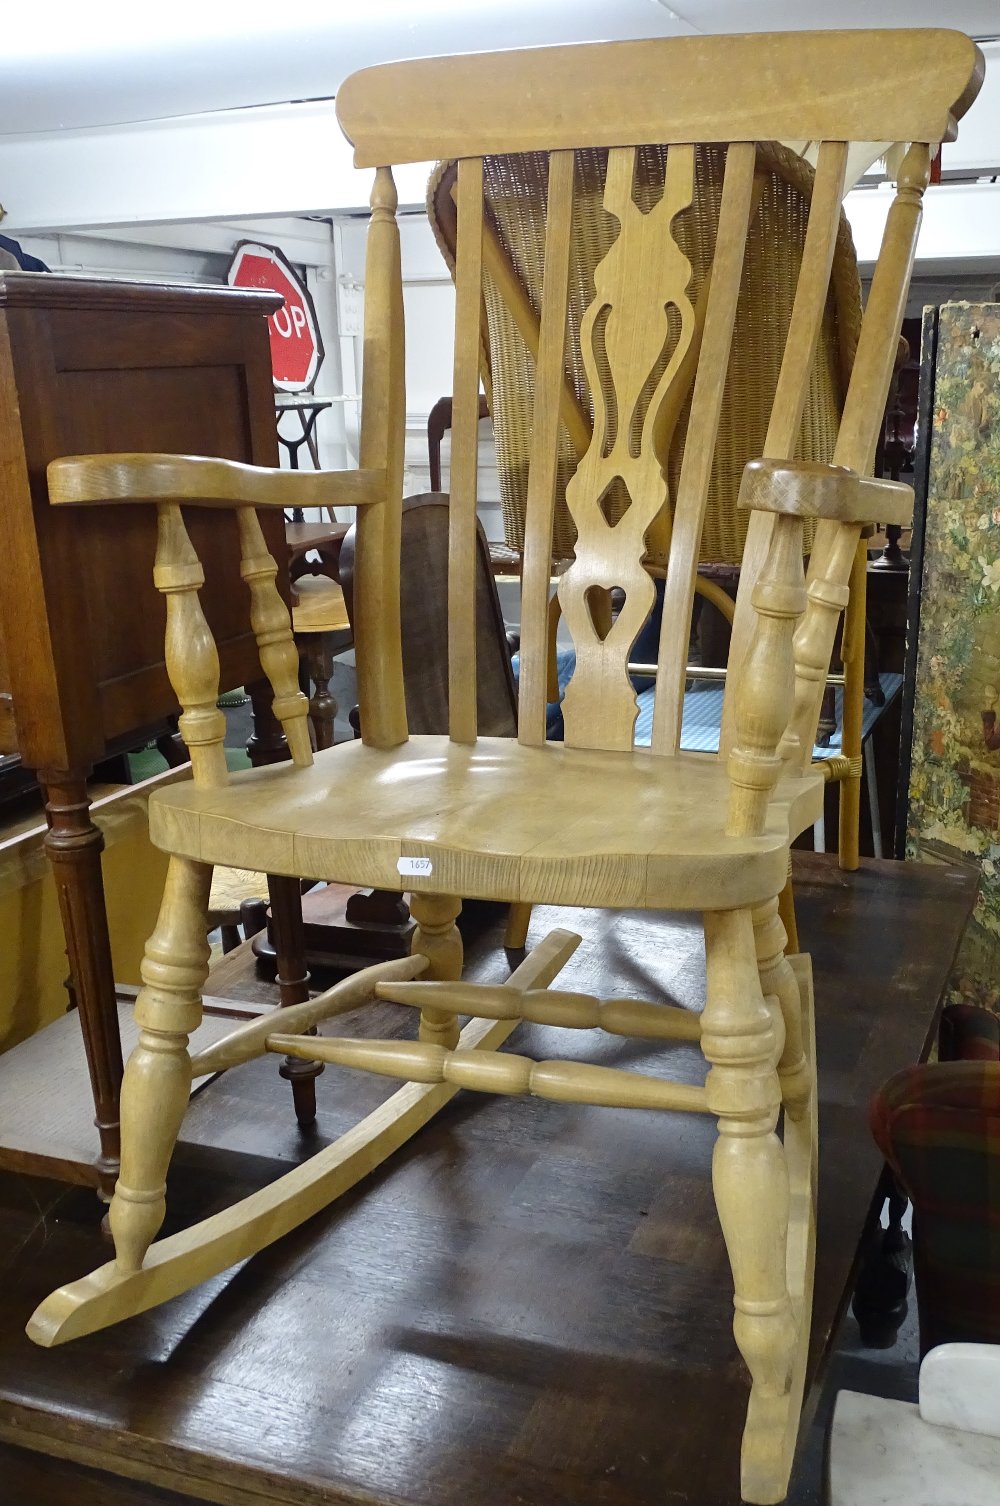 A modern beech Windsor kitchen rocking chair